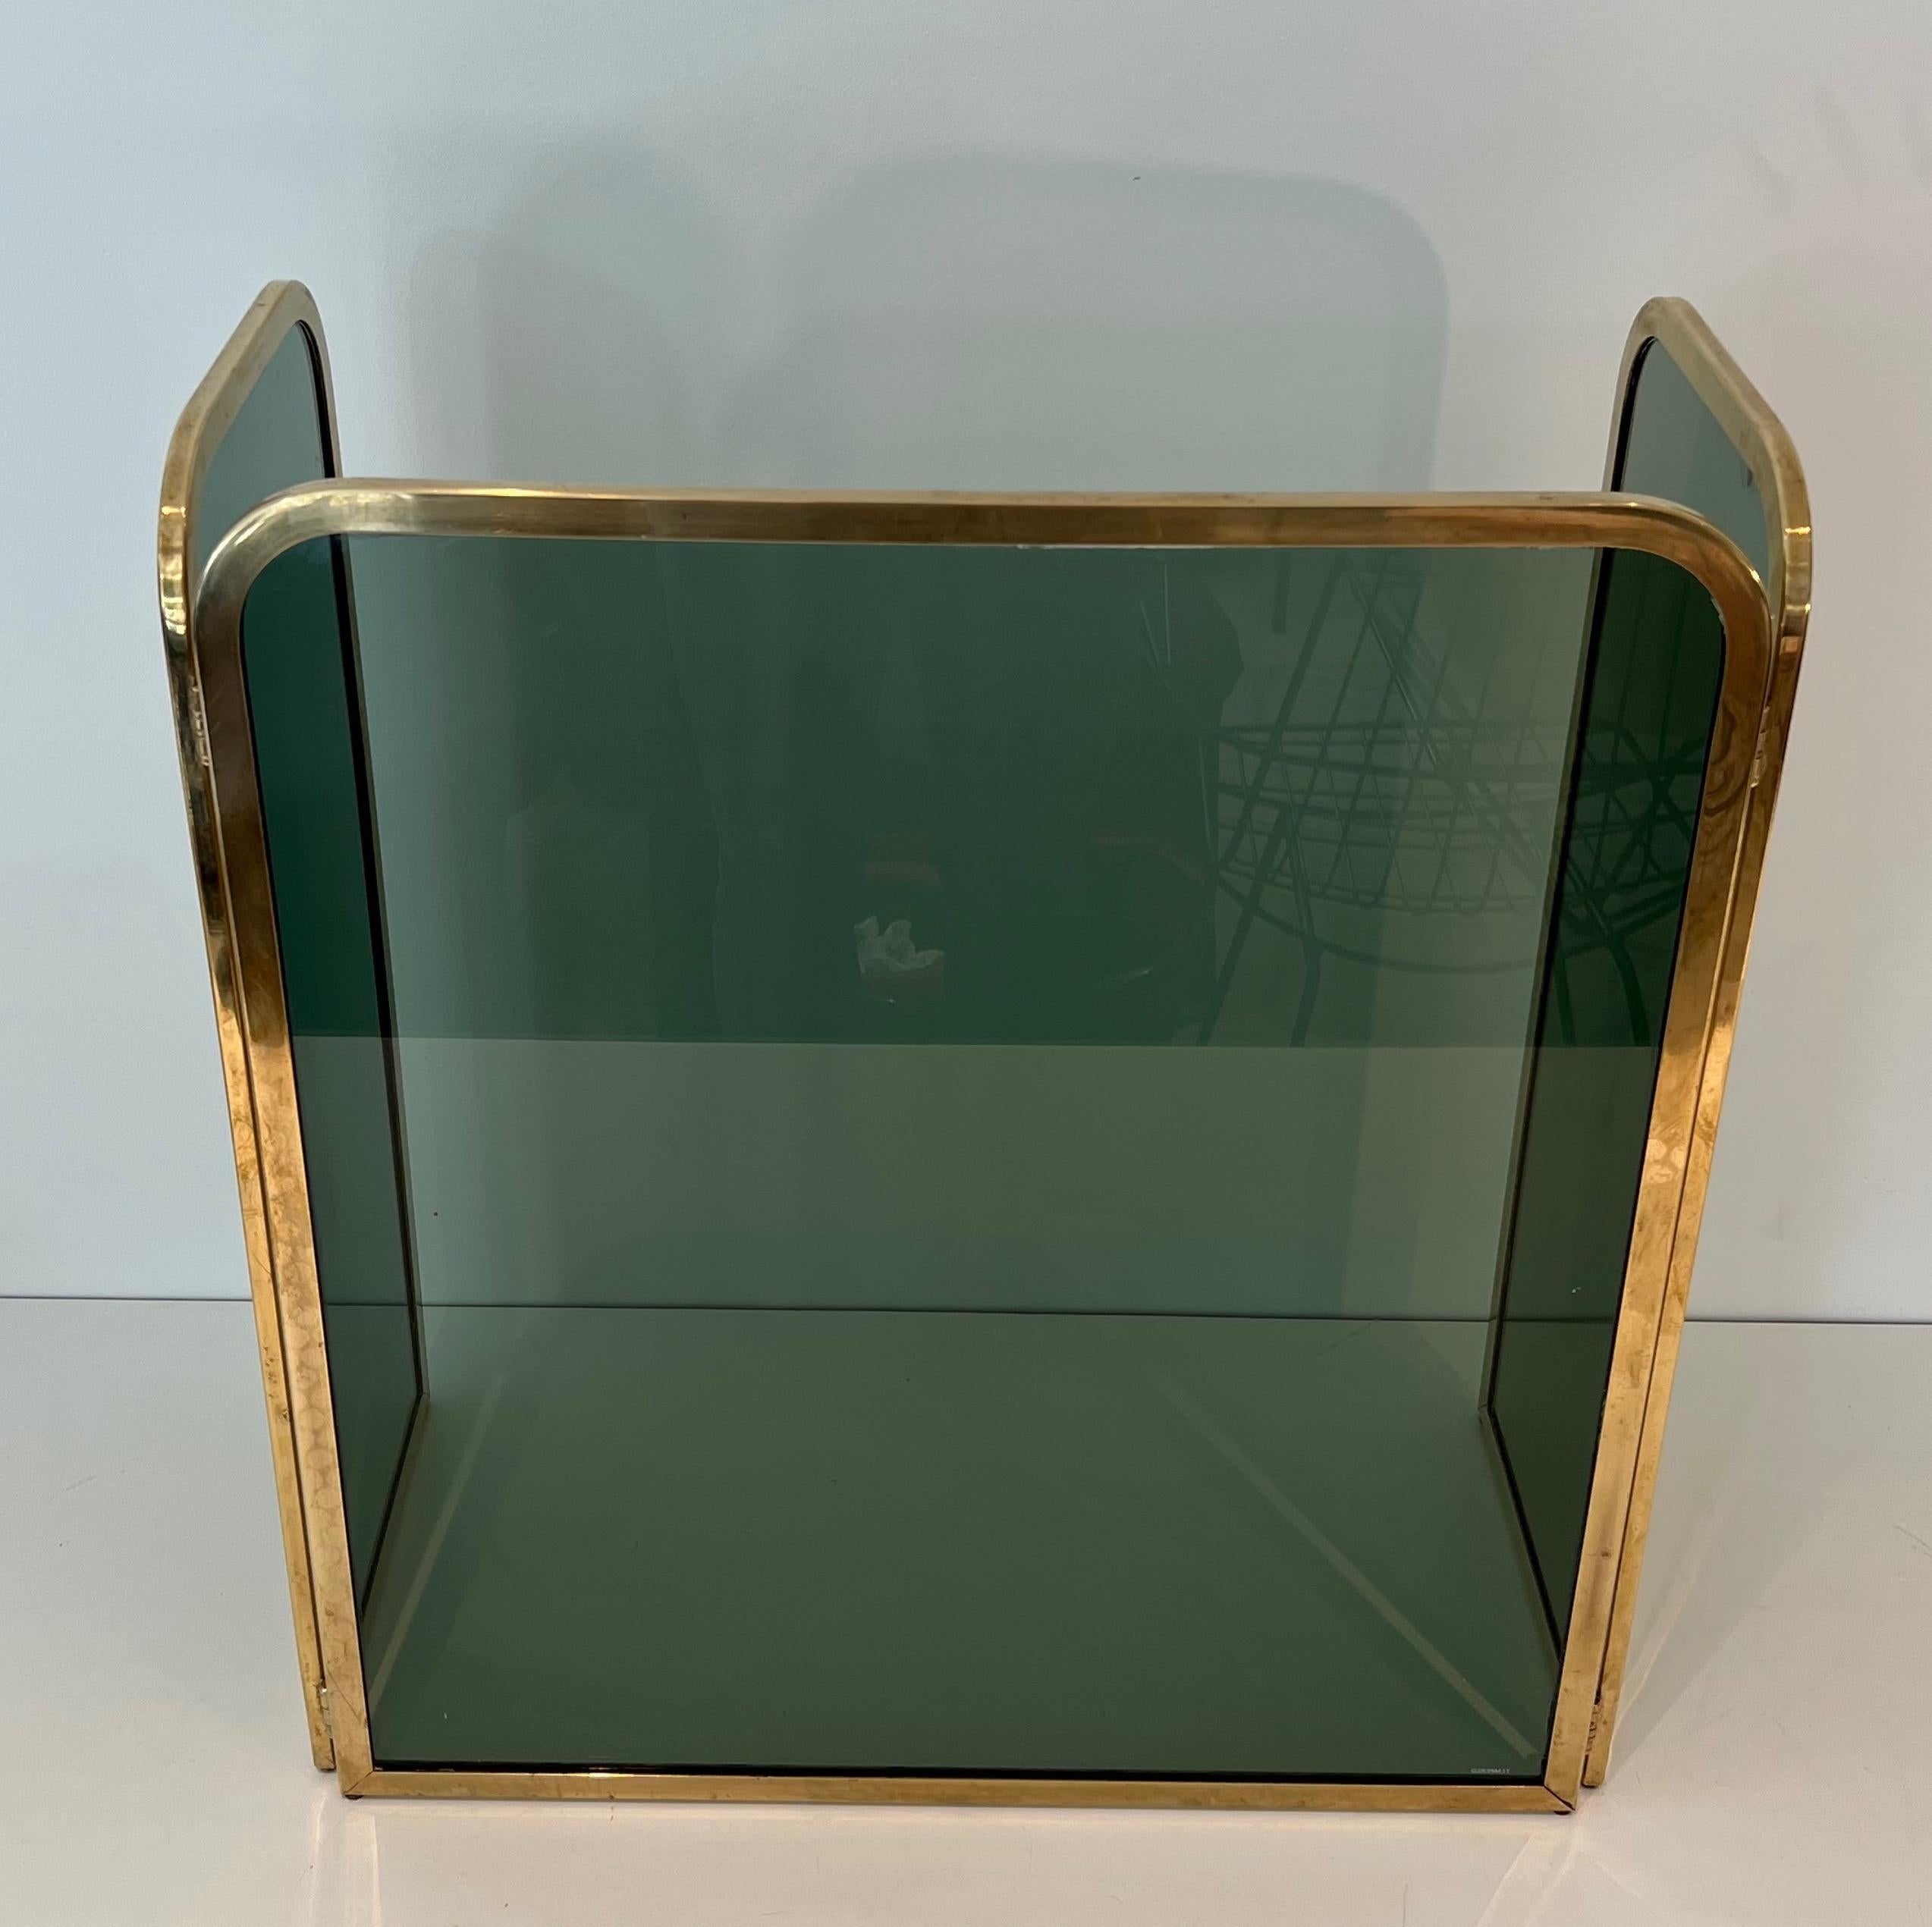 Dieser schöne und ungewöhnliche Kaminschirm besteht aus 3 grünlichen gehärteten Glasscheiben, die jeweils von einem Messingrahmen umgeben sind. Dies ist ein französisches Werk. CIRCA 1970